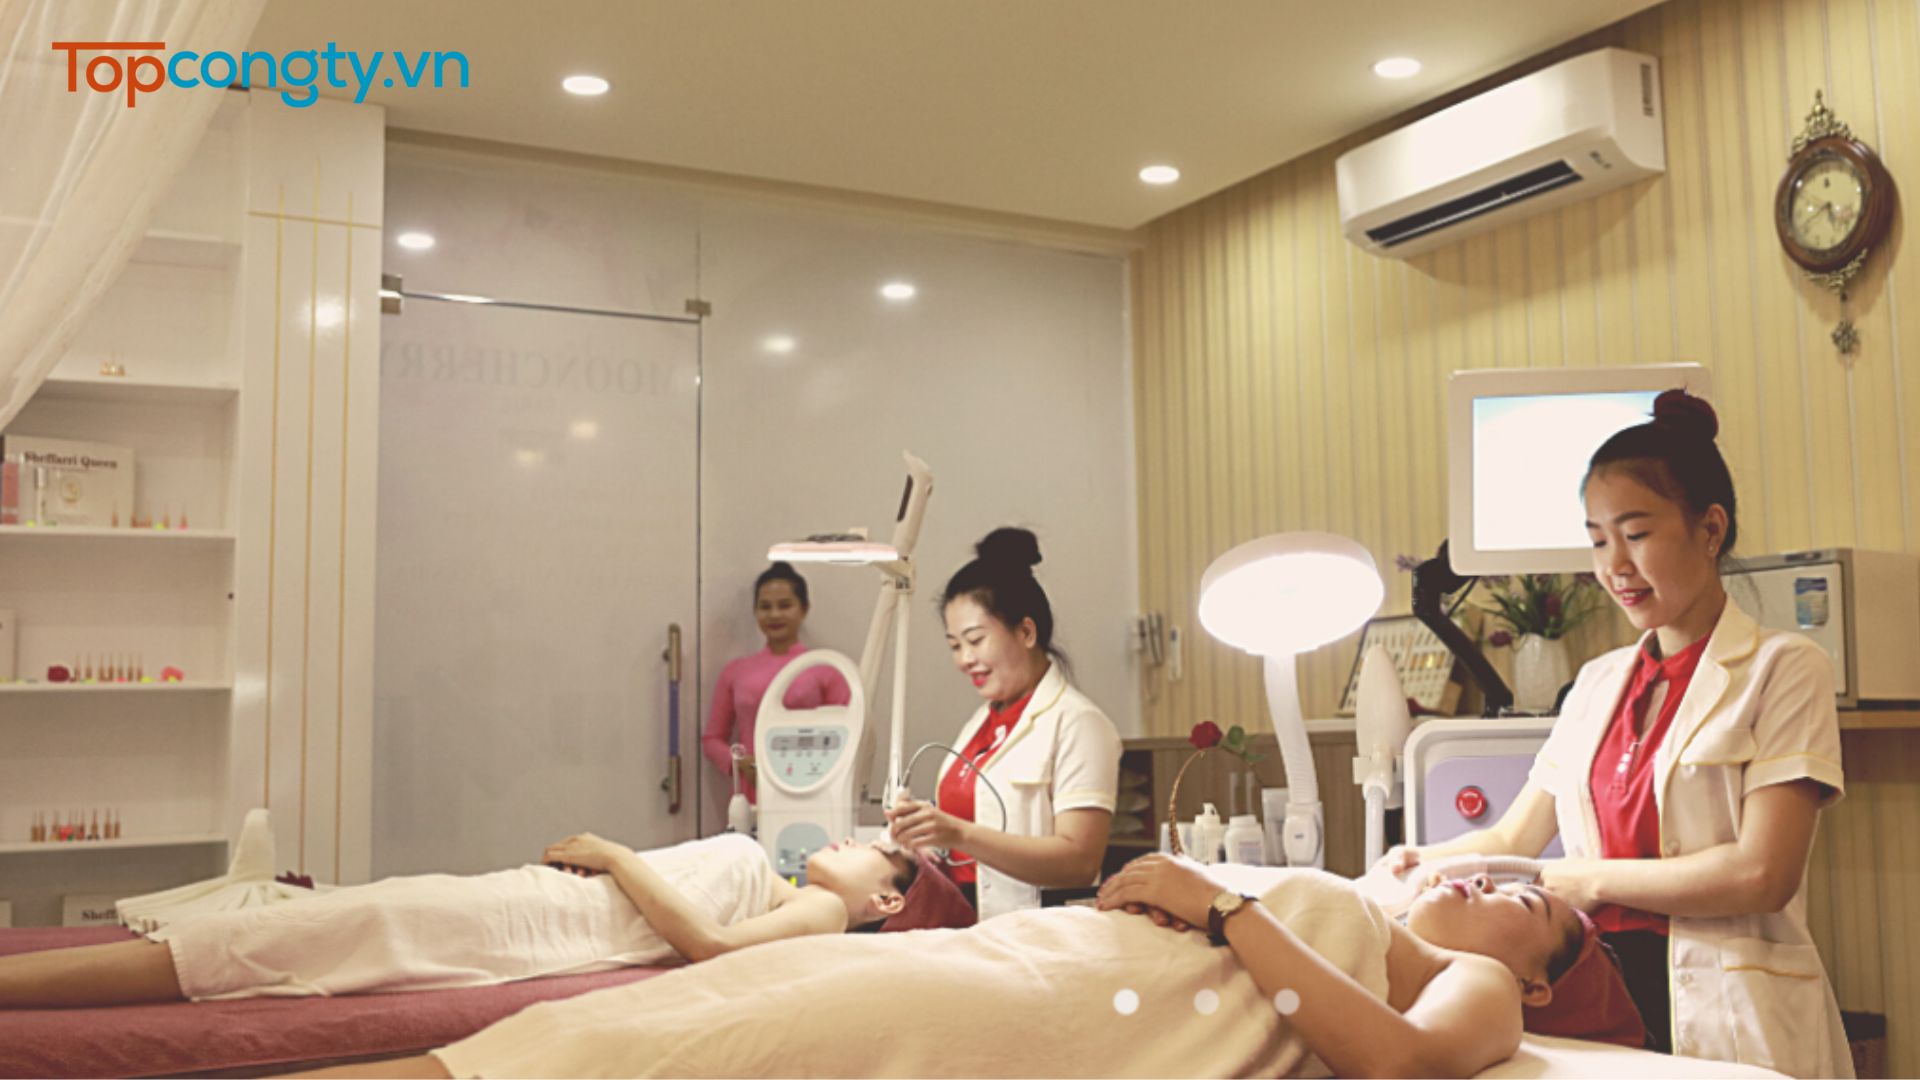 HB Spa - Nơi massage thư giãn ở Hà Nội đáng trải nghiệm